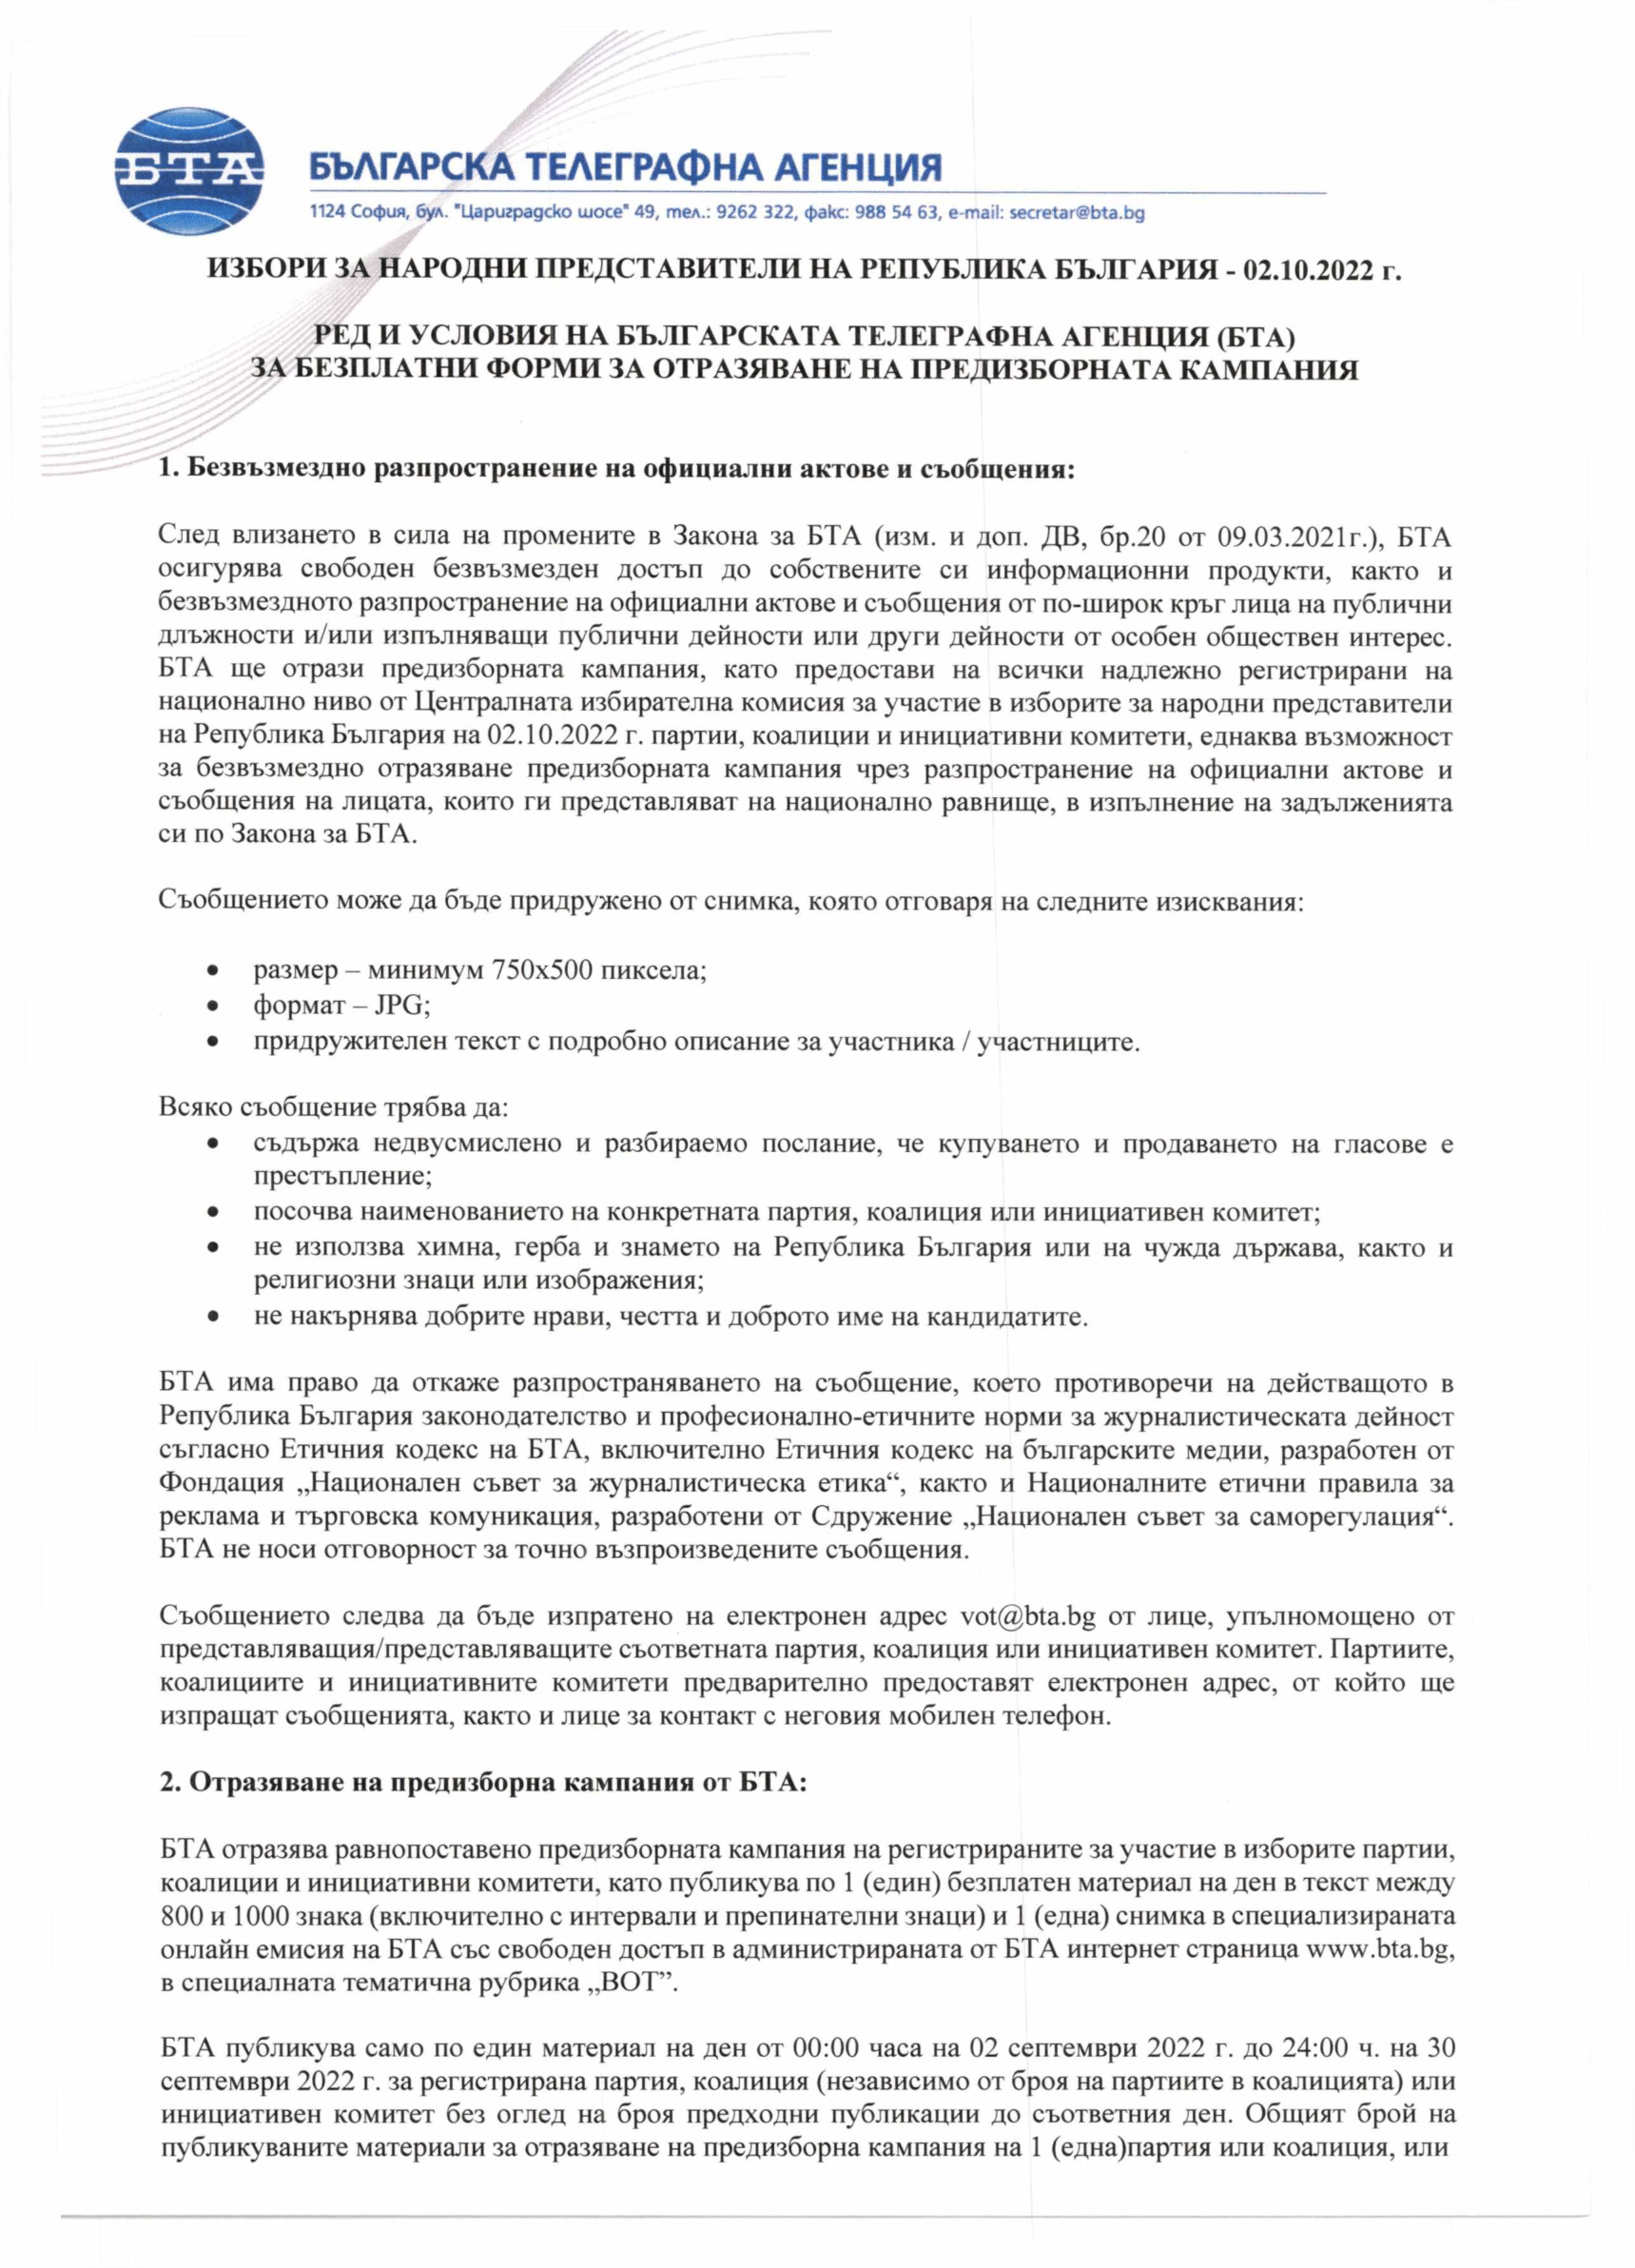 ВОТ - Ред и условия на БТА за отразяване на предизборната кампания за изборите за народни представители на 02.10.2022 г.